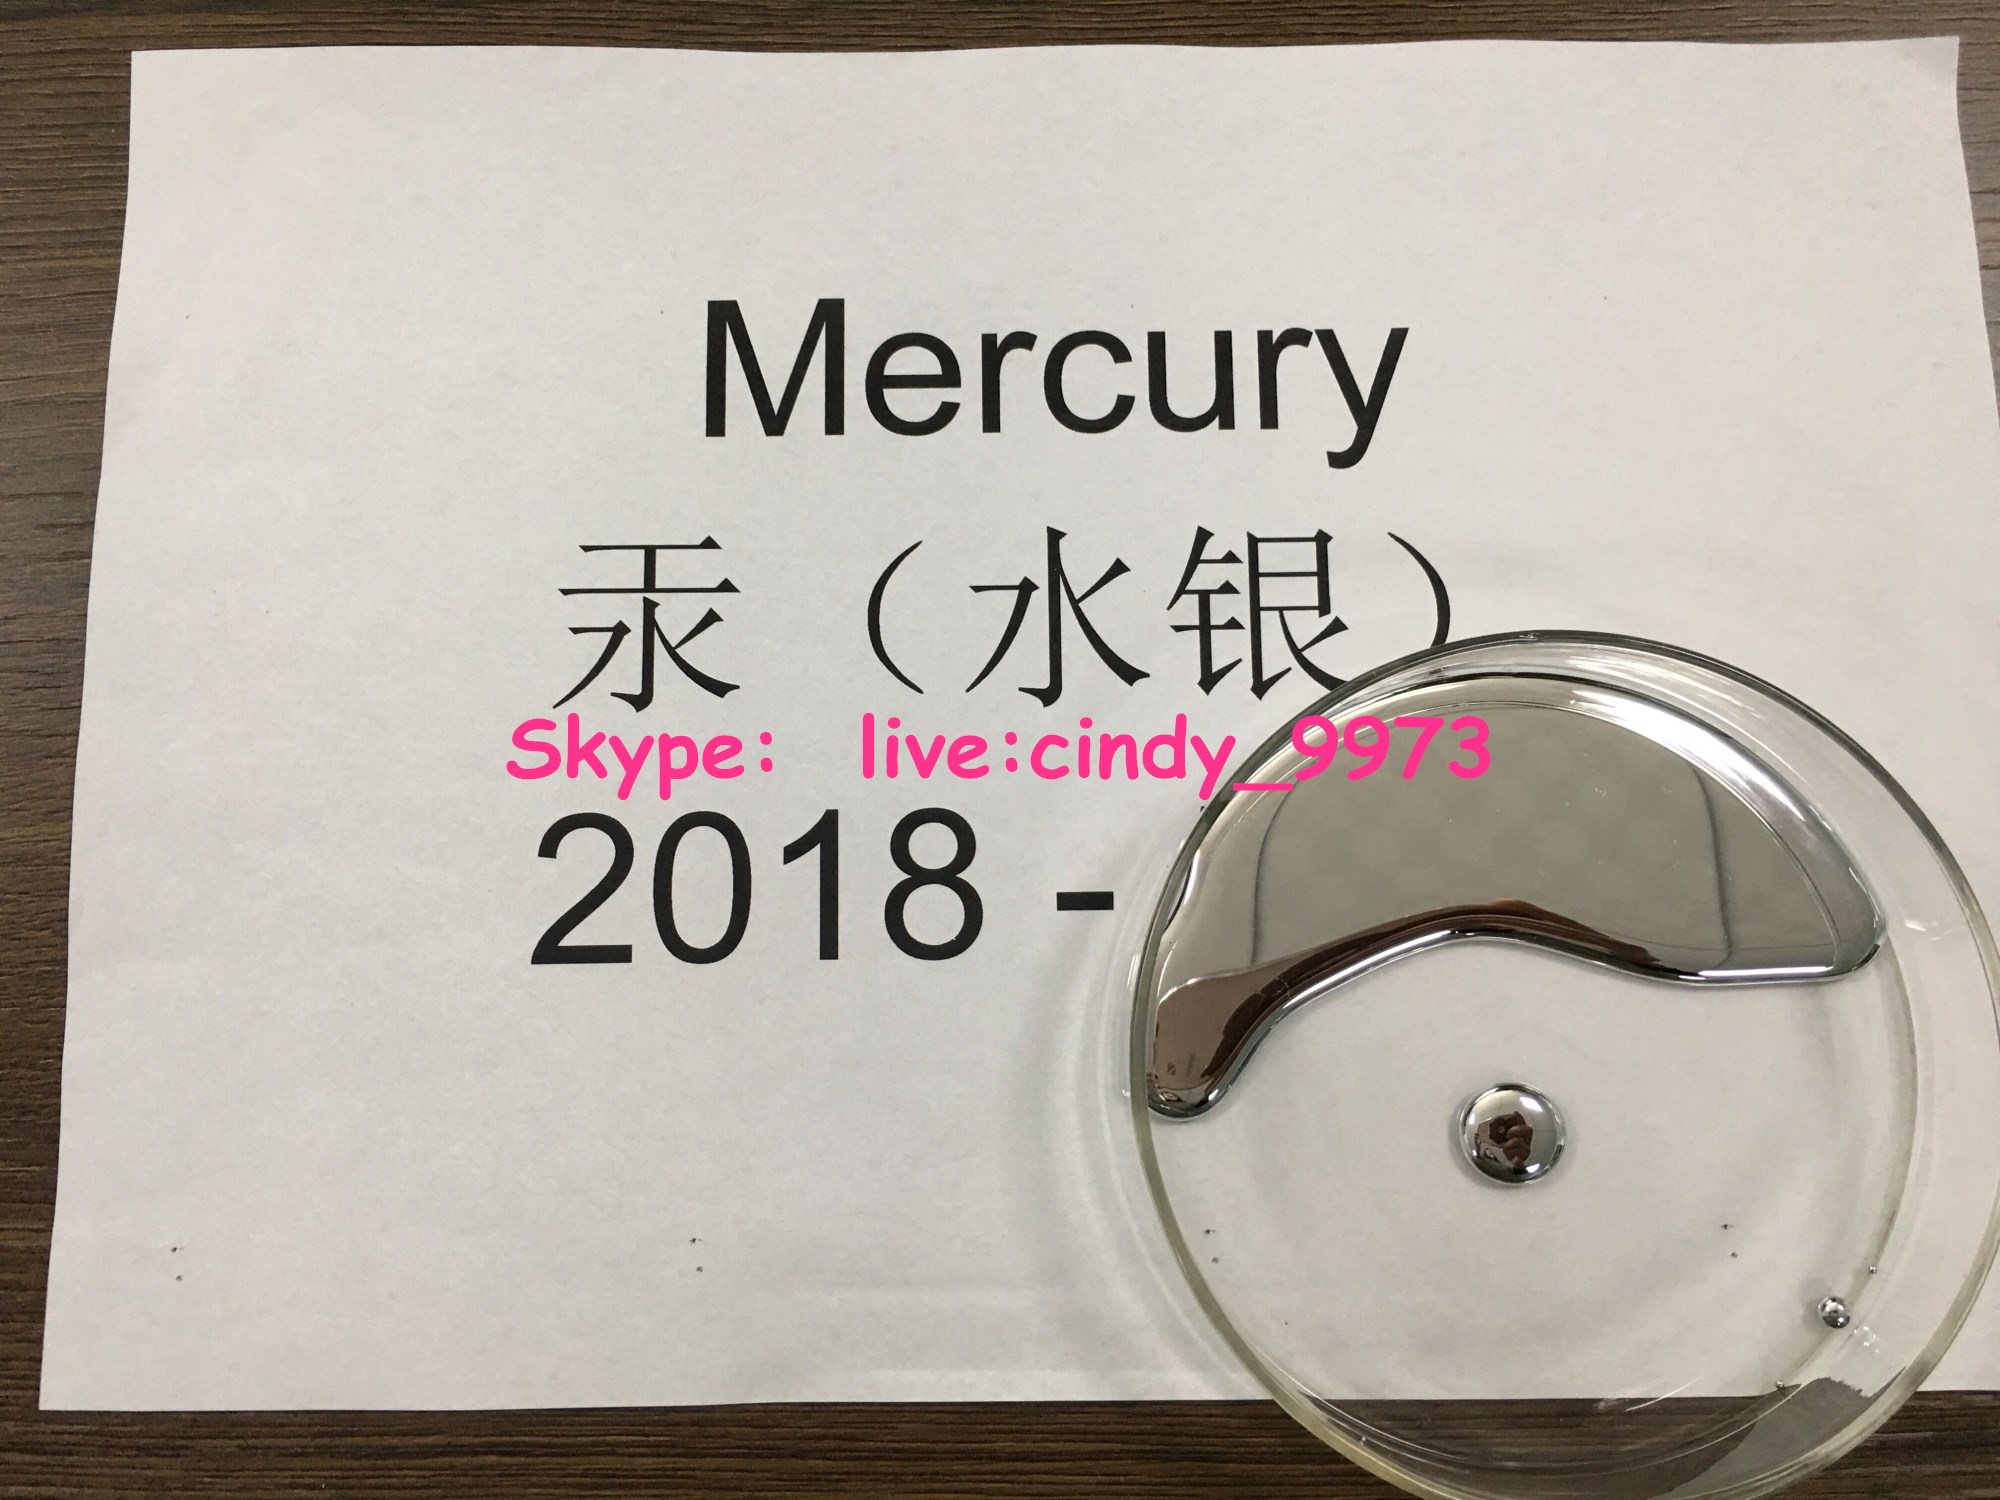 Mercury 99.999% CAS No.7439-97-6 Quicksilver Hydrargyrum mercury Mercury Skype: live:cindy_9973,Mercury 99.999% CAS No.7439-97-6 Quicksilver Hydrargyrum mercury Mercury Skype: live:cindy_9973